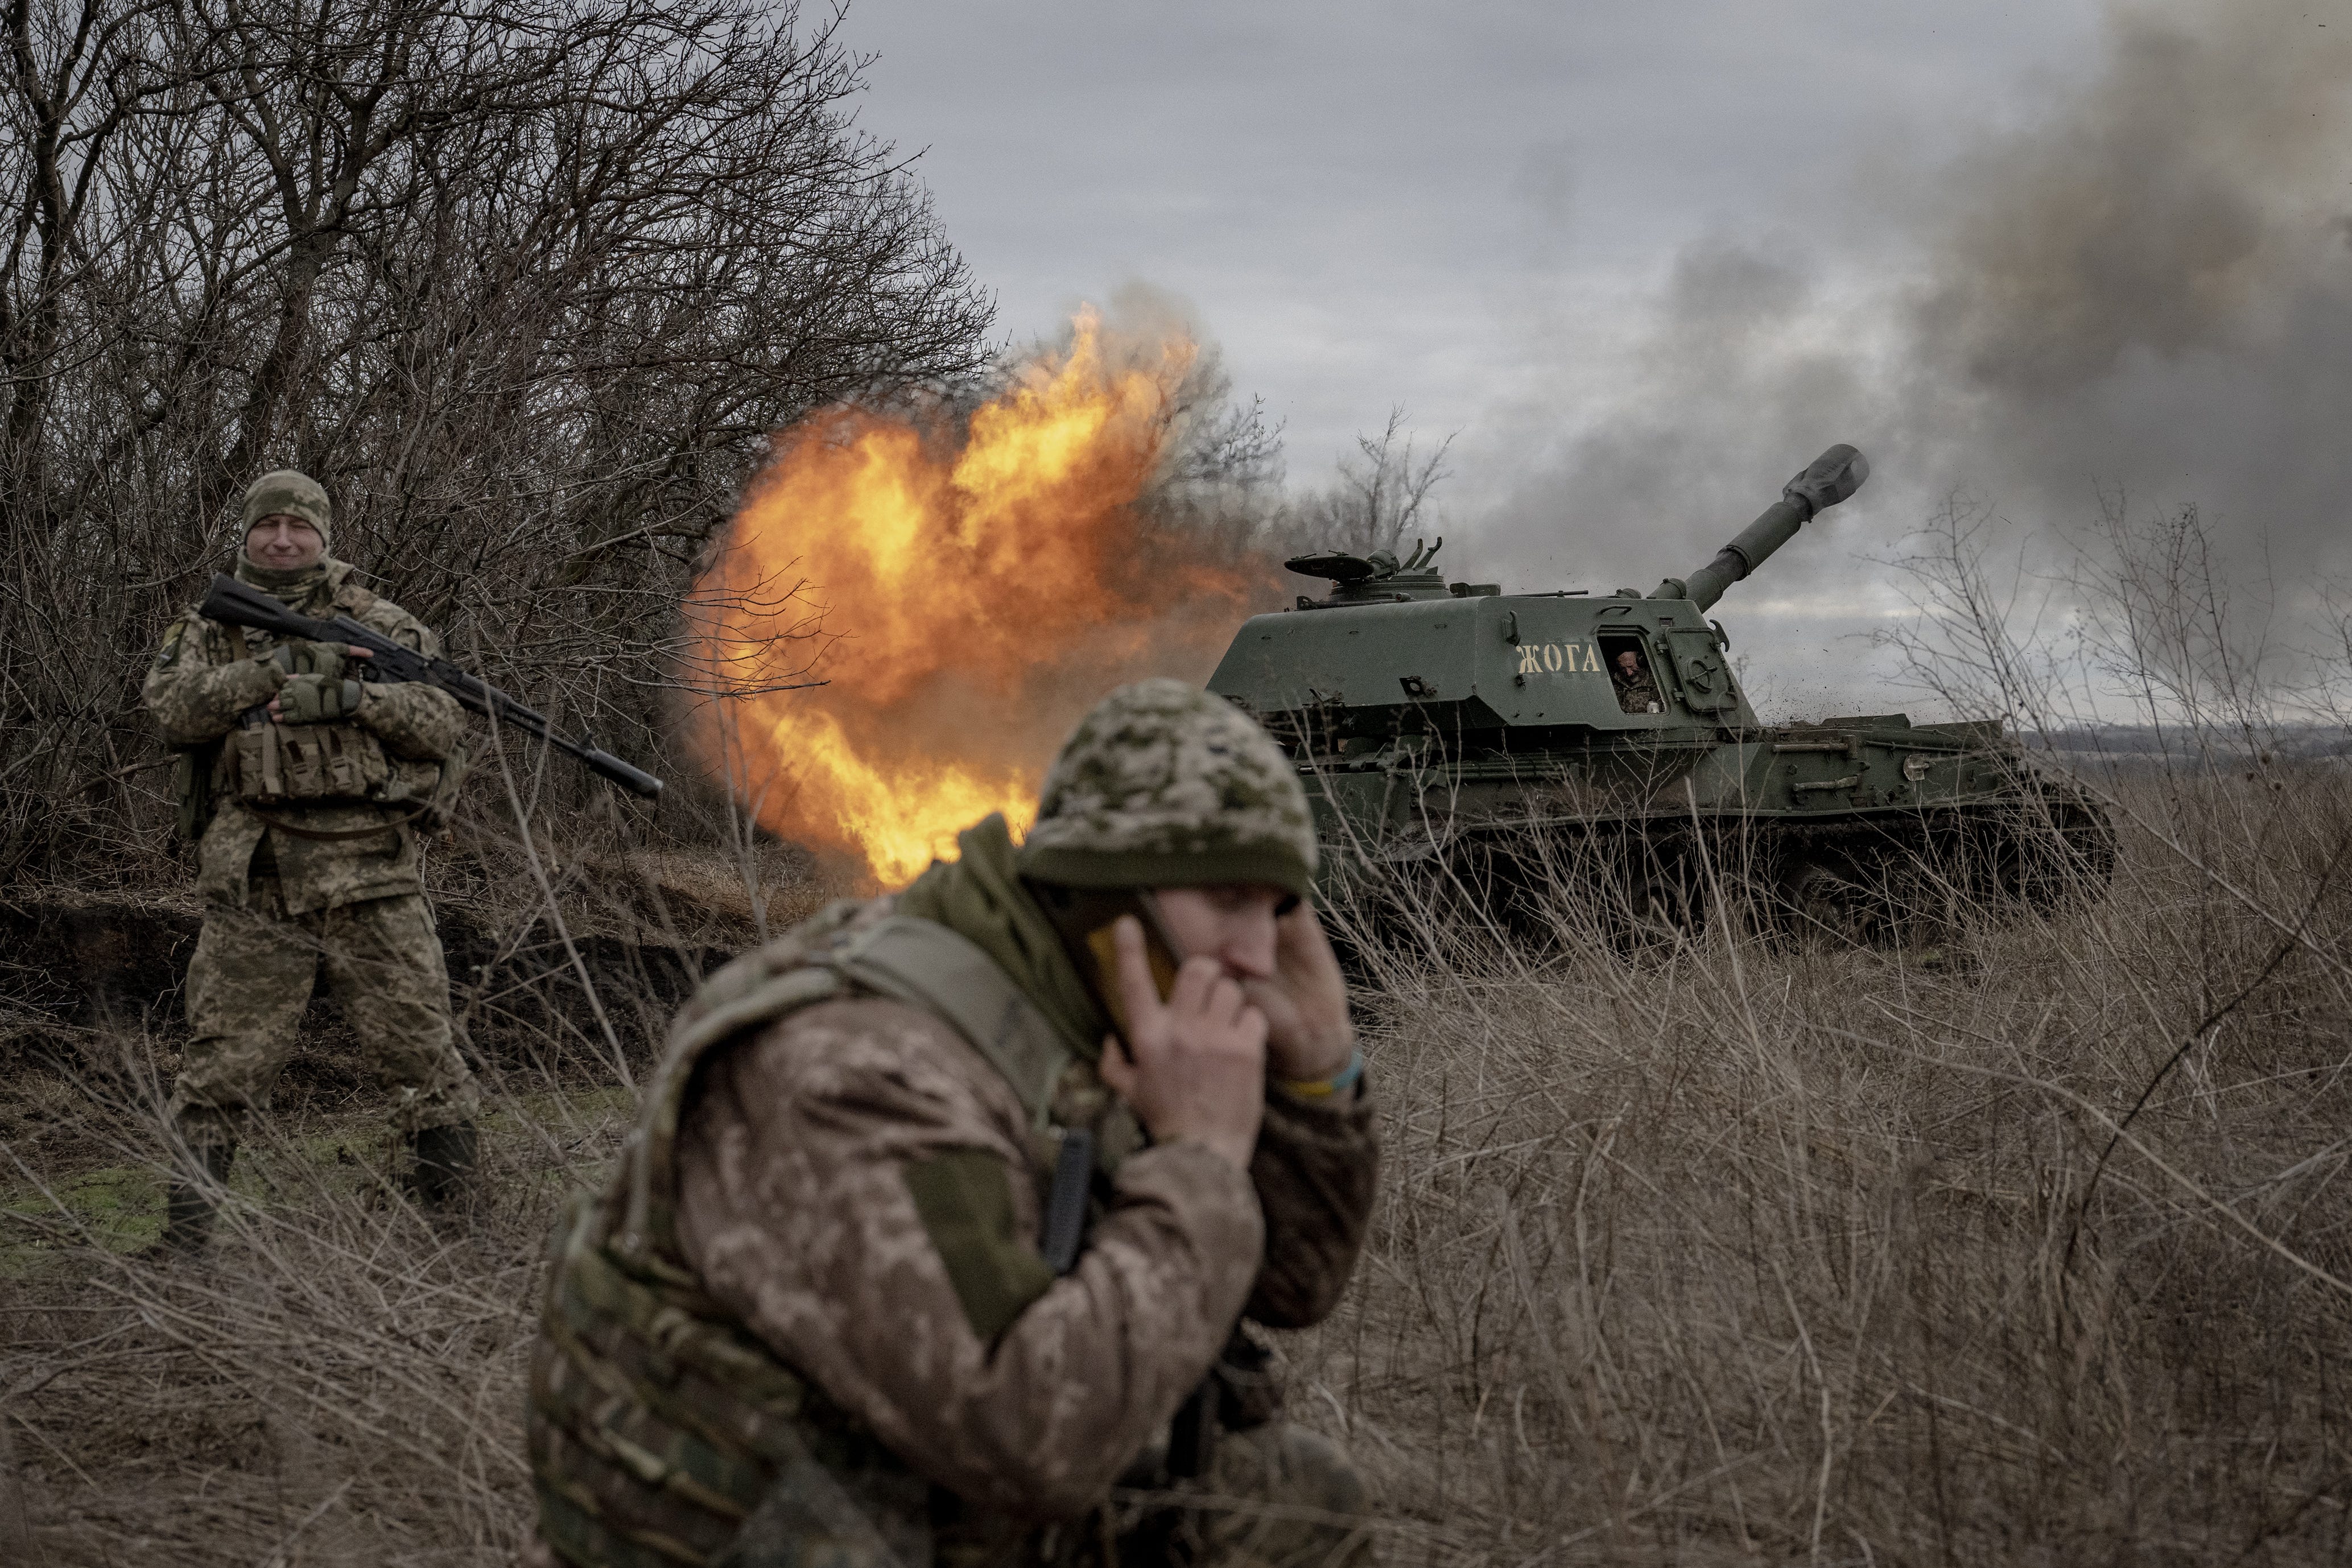 Ein ukrainischer Soldat feuert auf die russische Stellung, während die ukrainischen Soldaten der Artillerieeinheit an der Front in Richtung Awdijiwka auf Munitionsunterstützung warten, während der russisch-ukrainische Krieg in Donezk weitergeht.